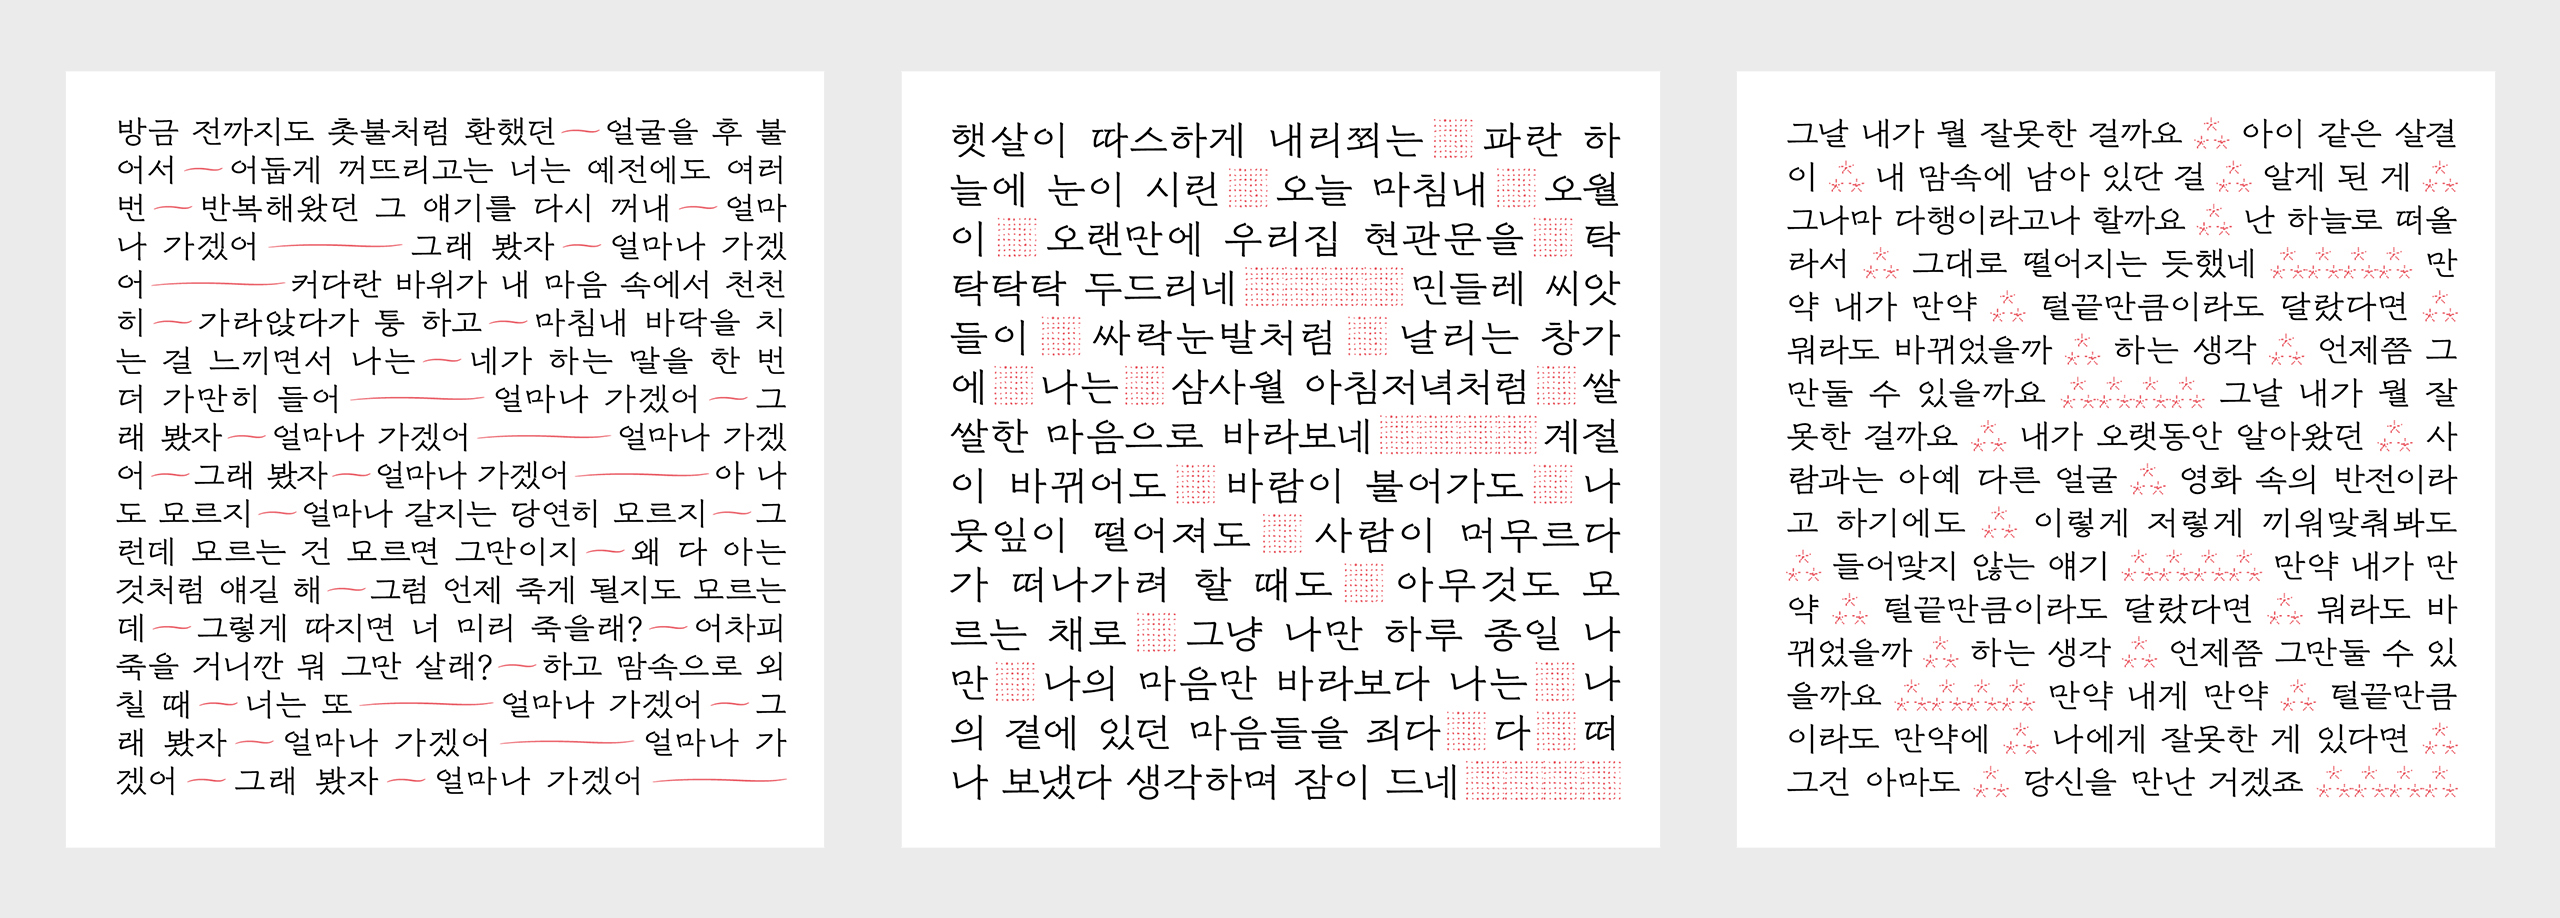 서체, 채희준, 타이포그래피, 장기하, 기하체, 폰트, chaeheejoon, typography